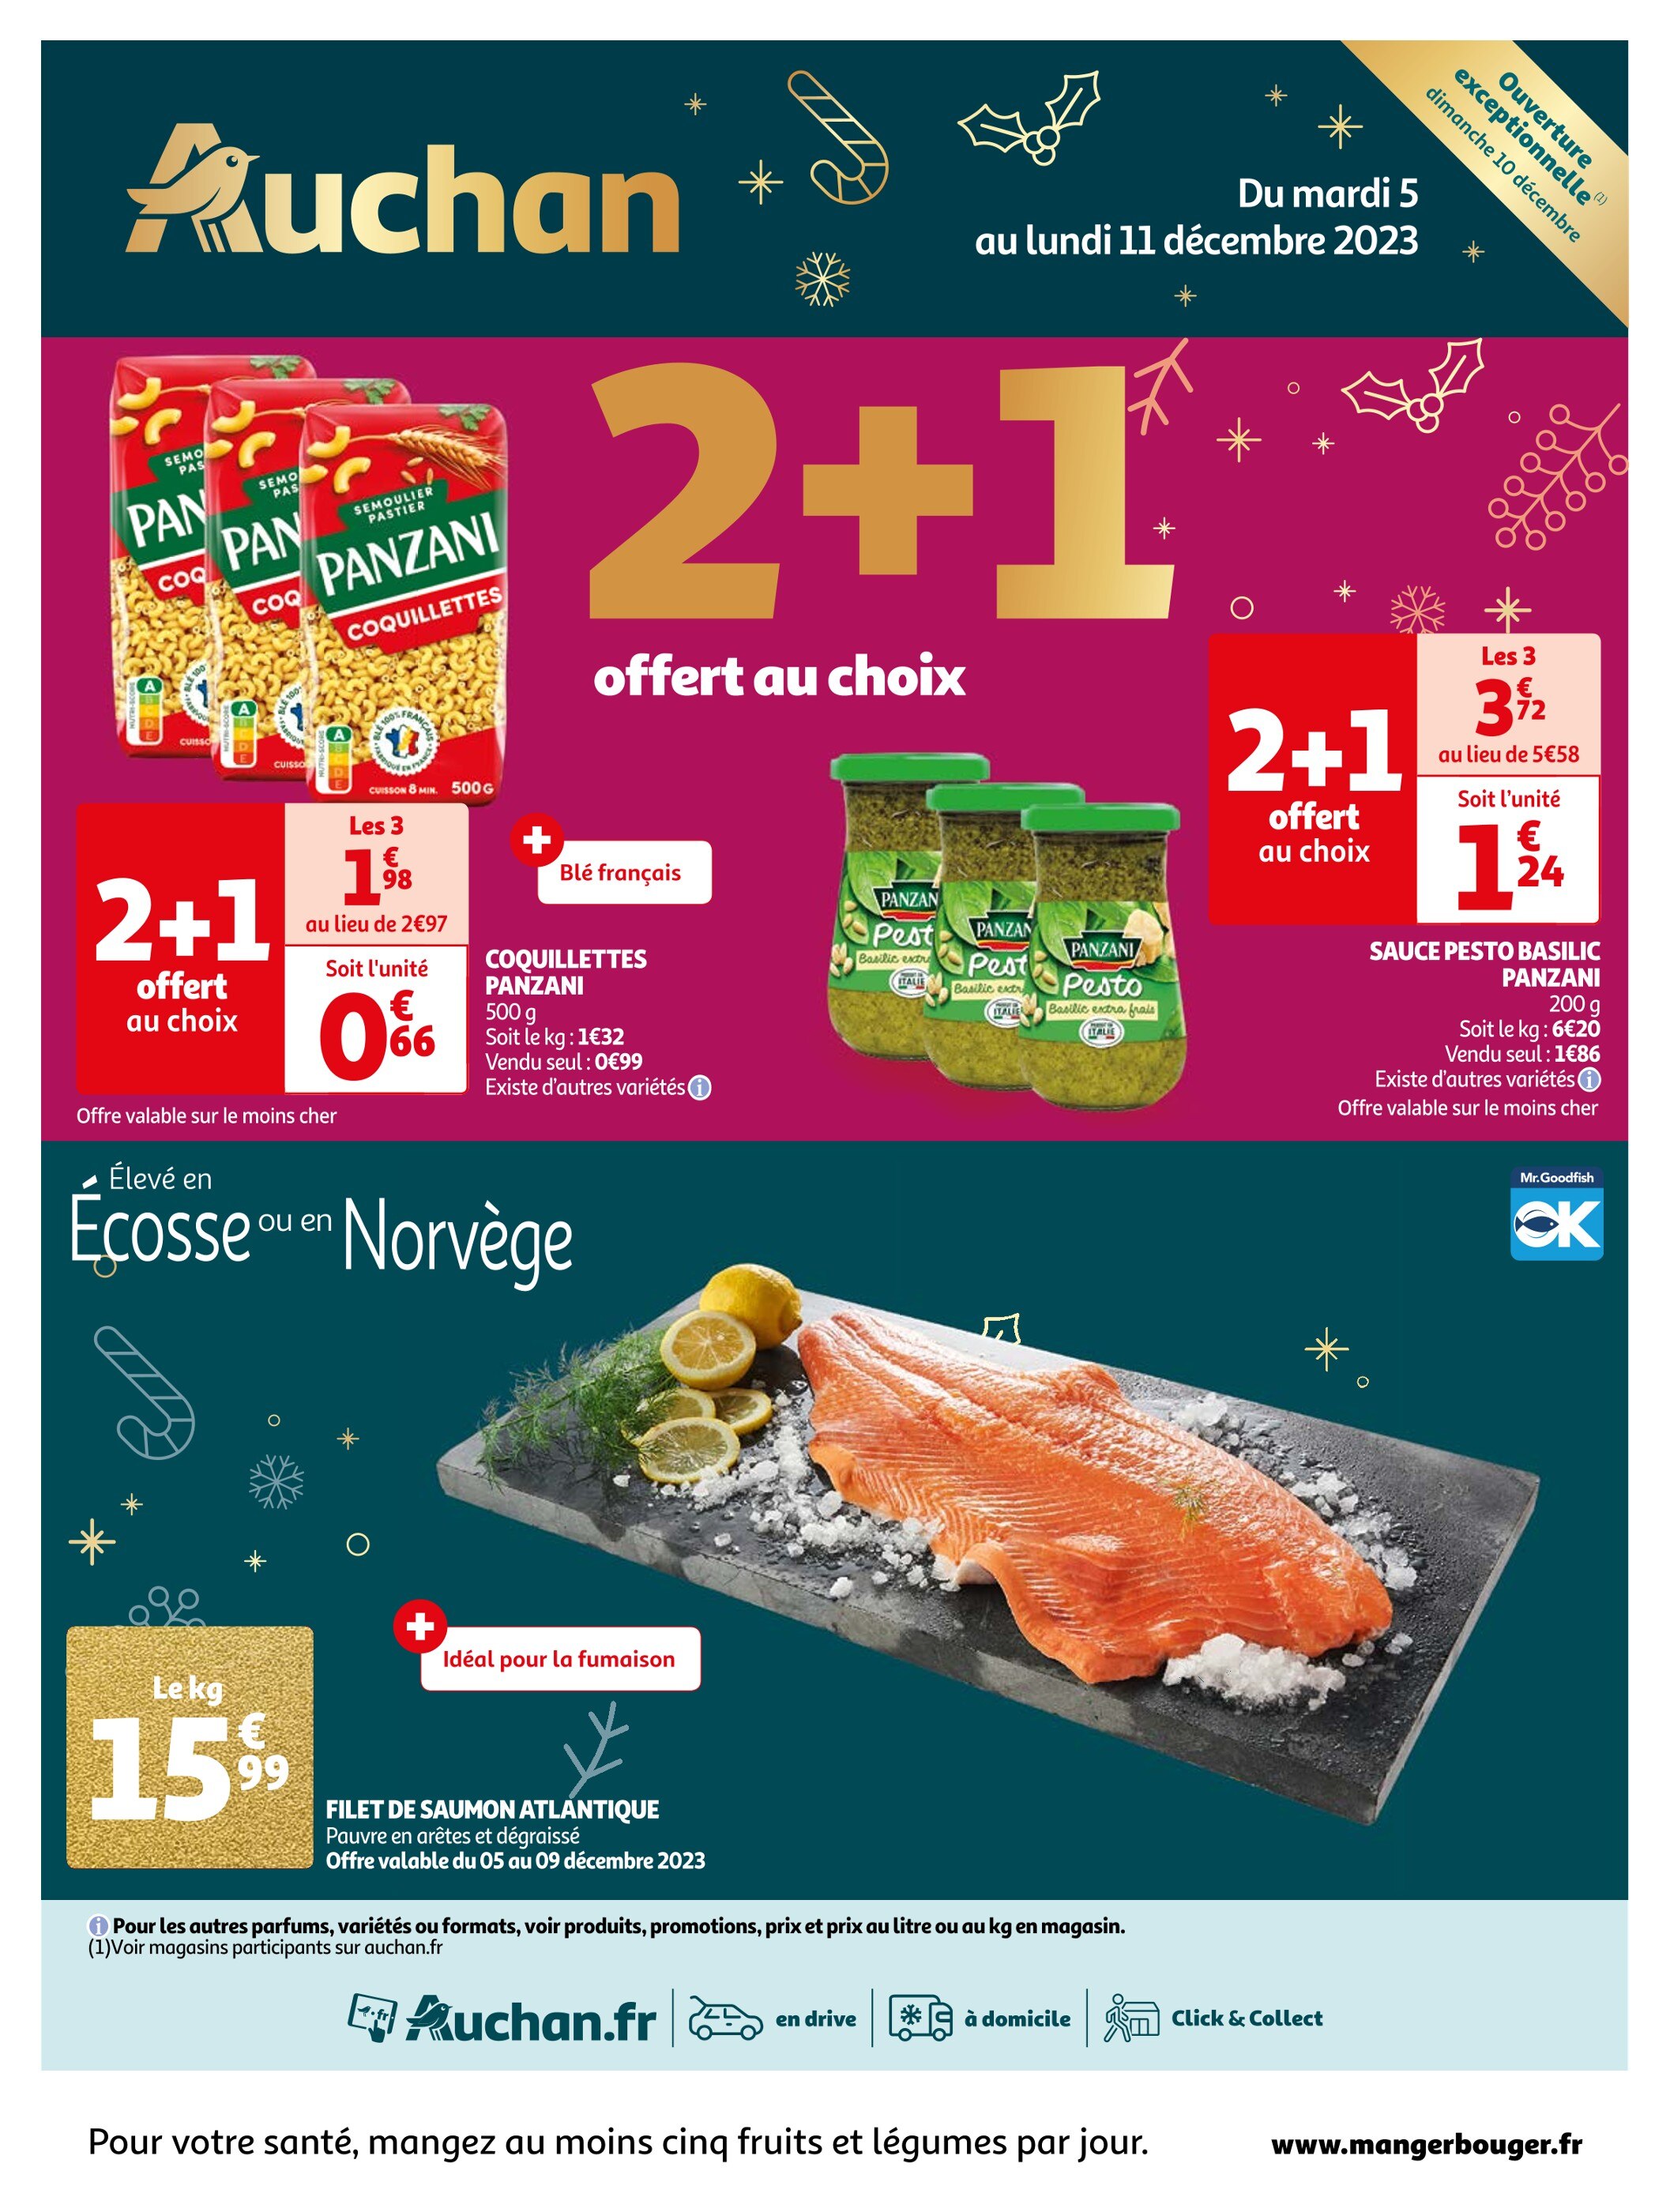 Promo Moulinex Couvercle Cookeo Extra Crisp Ez150800 chez Auchan